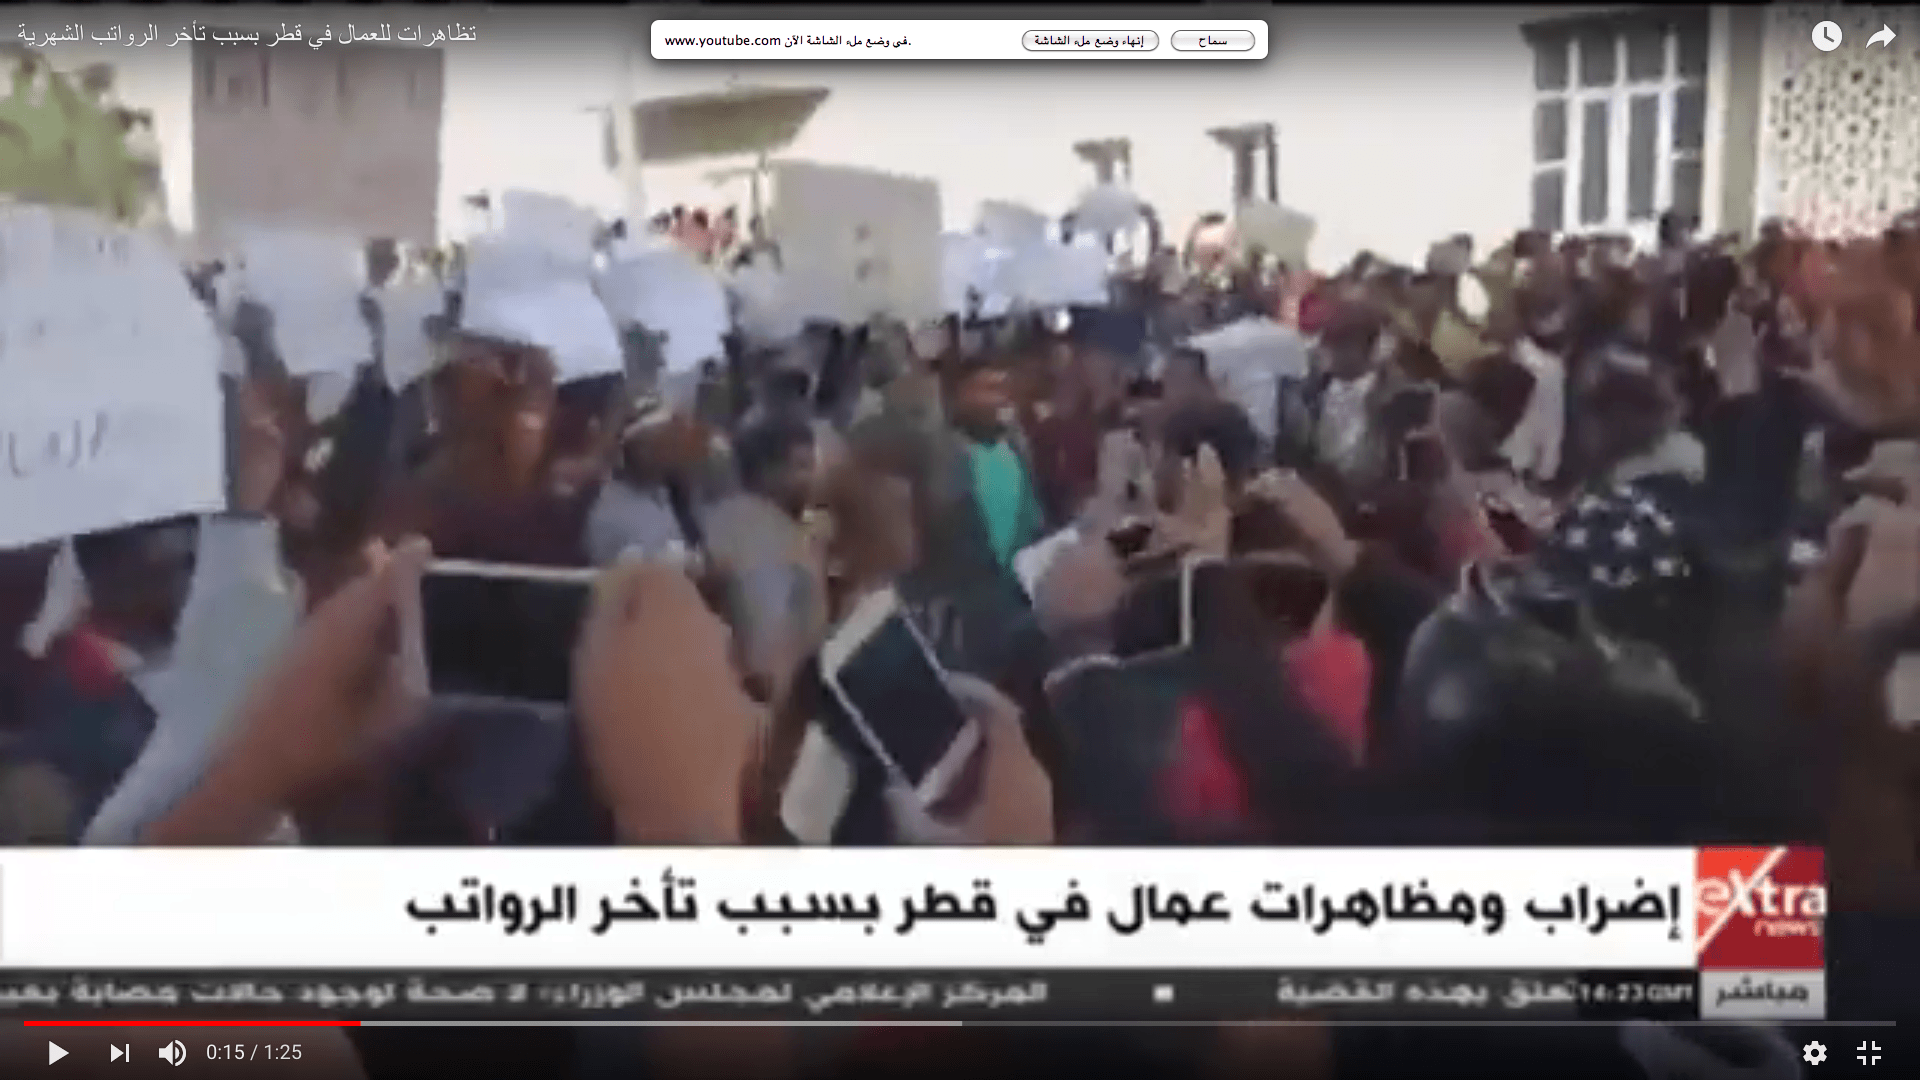   شاهد| مظاهرات العمال فى قطر